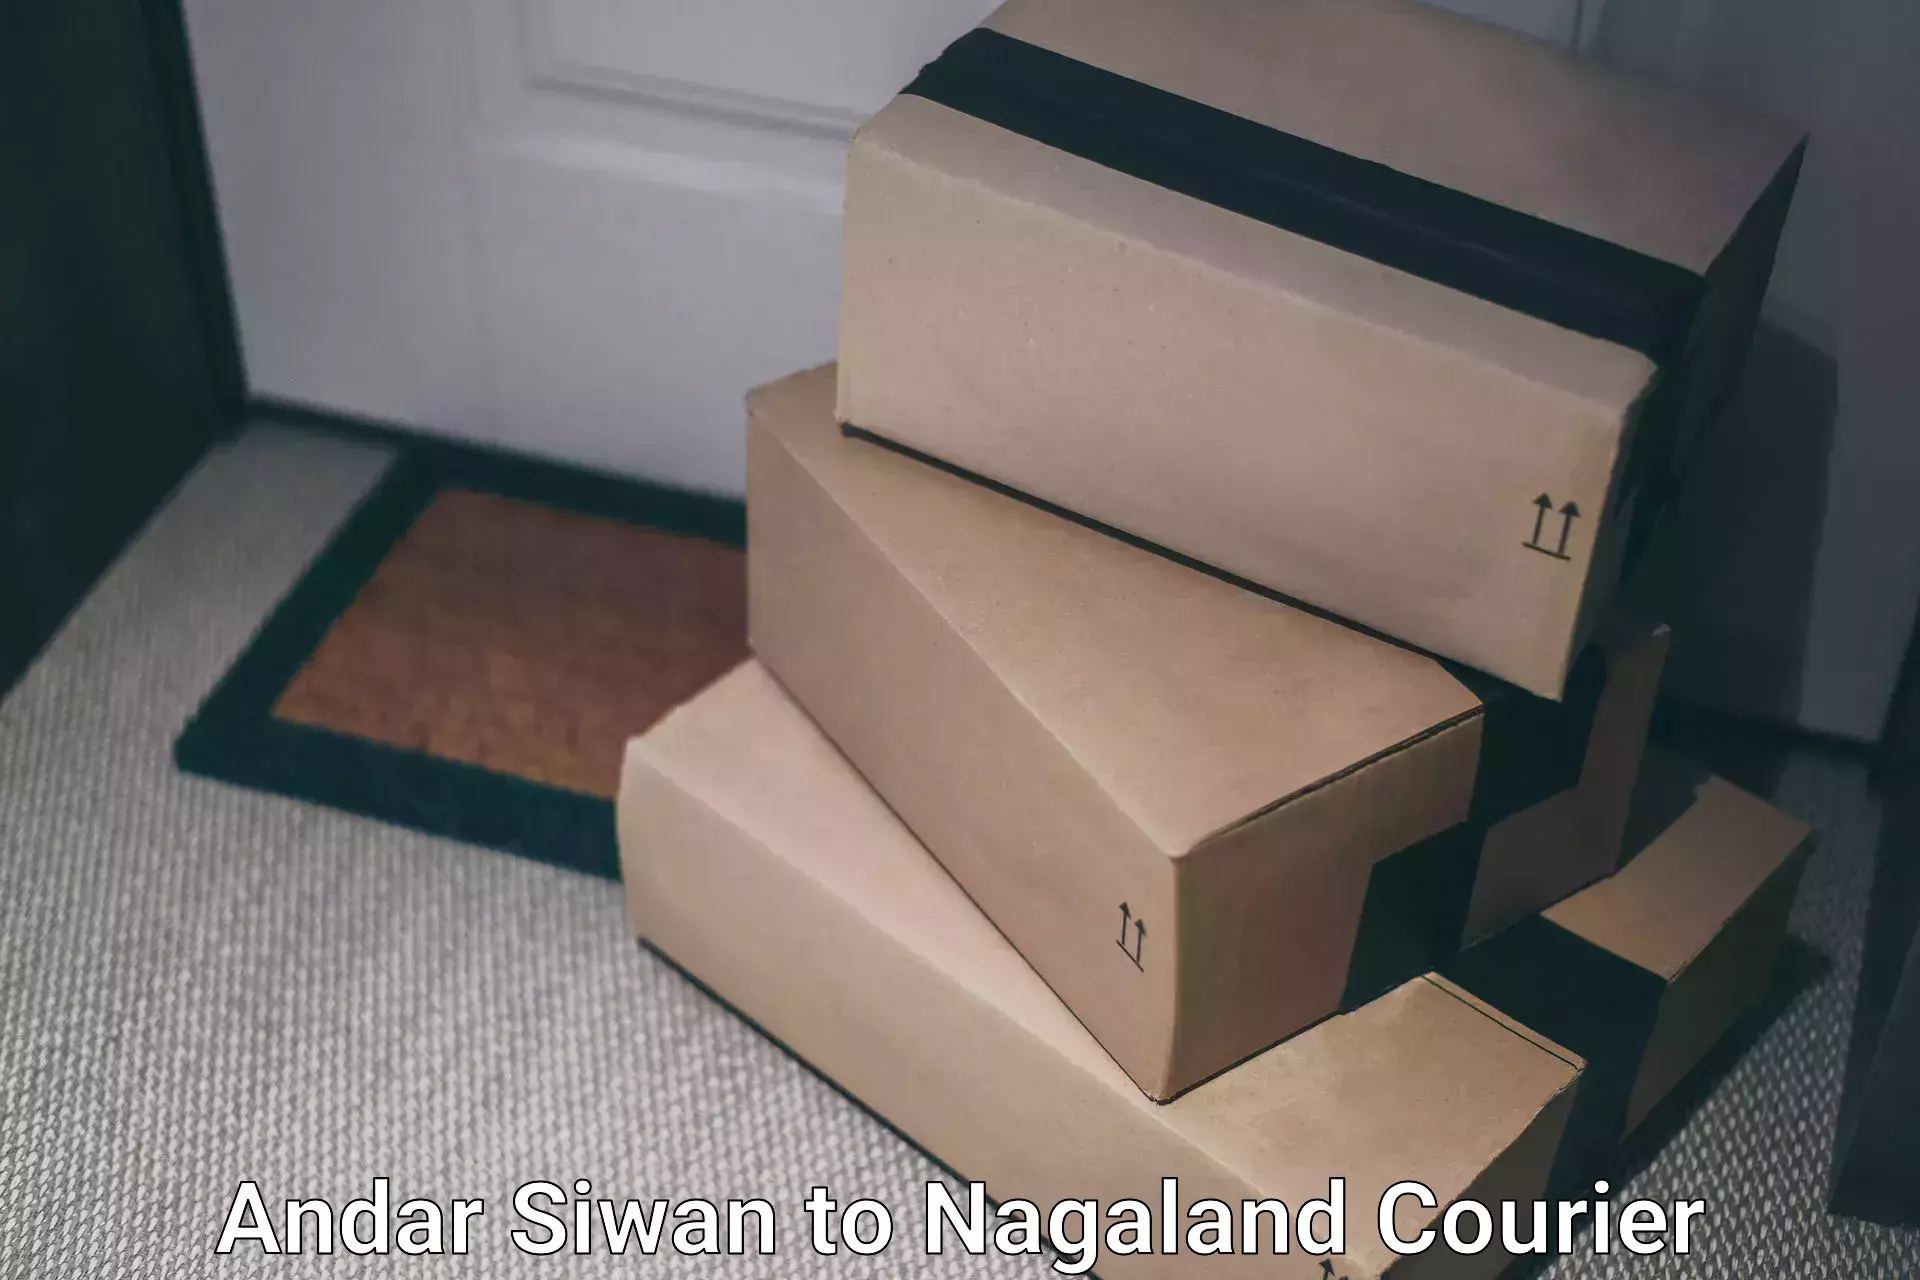 Efficient order fulfillment Andar Siwan to NIT Nagaland